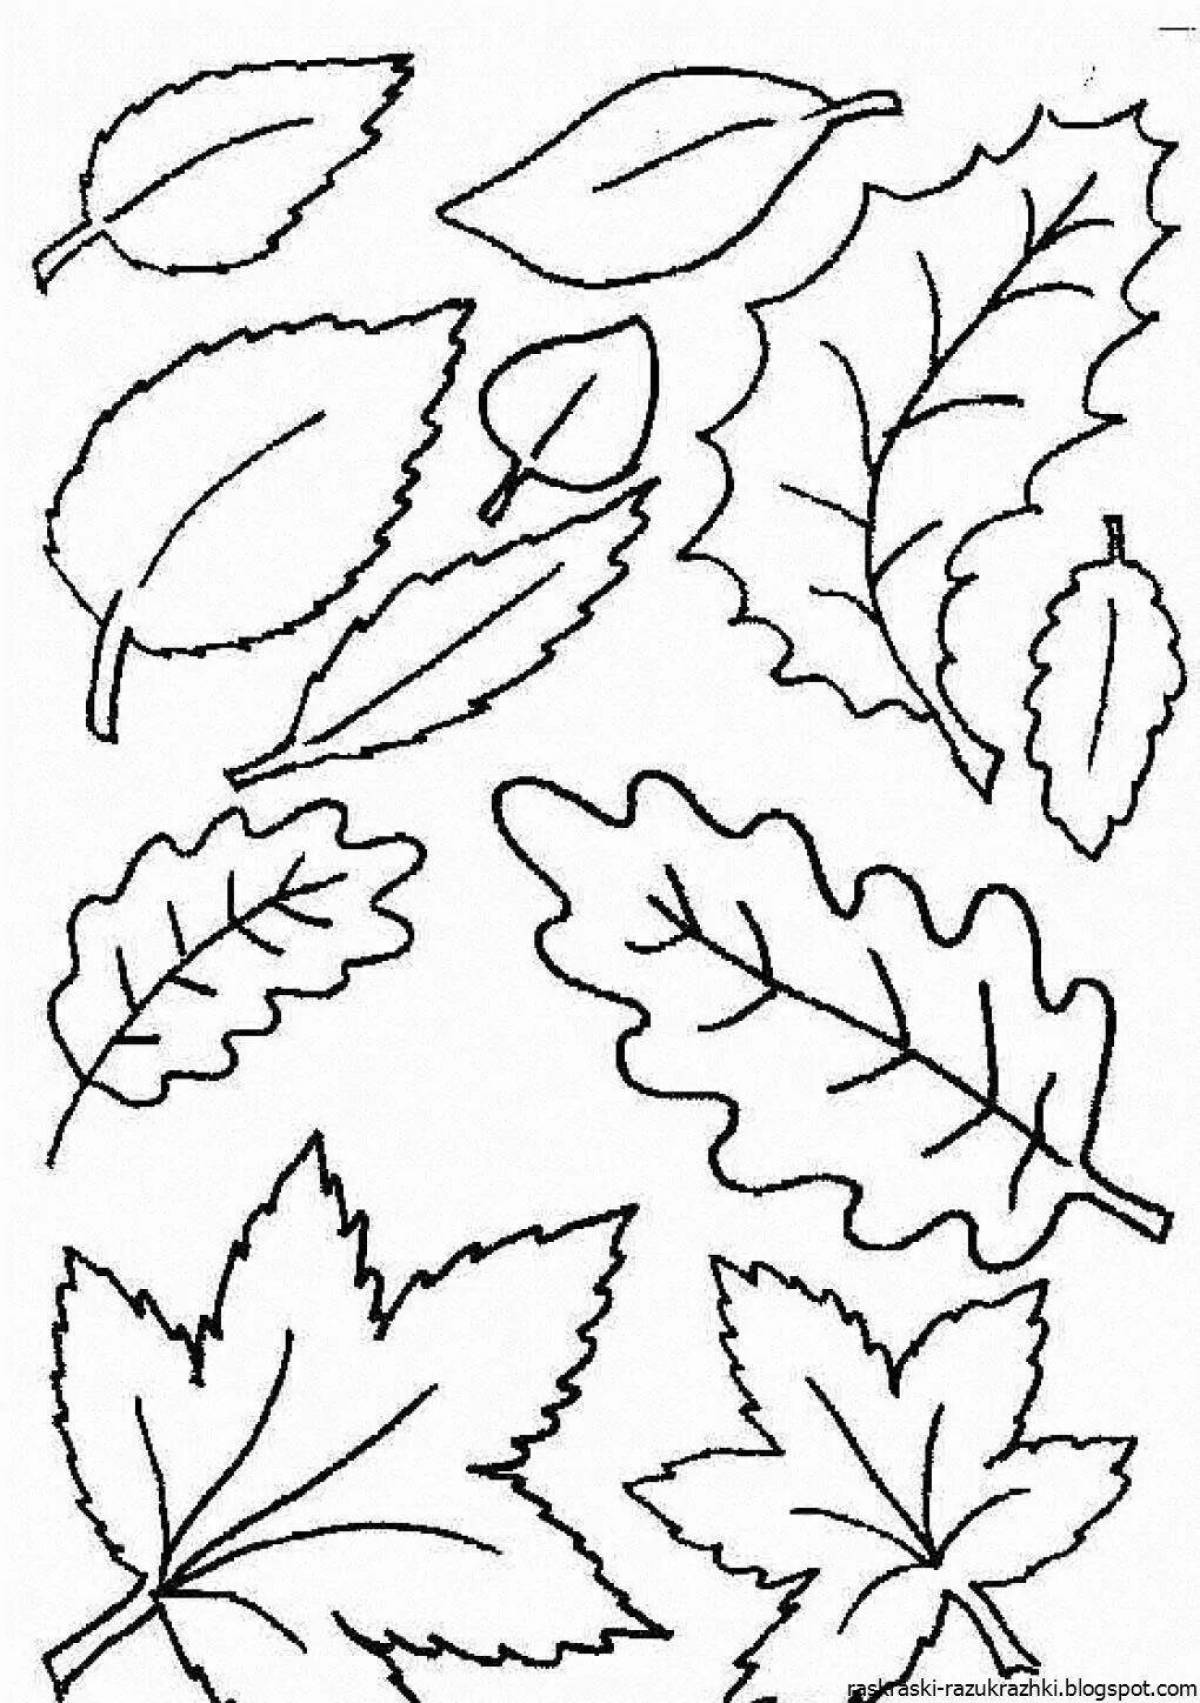 Раскрась листочки. Листья раскраска. Осенние листочки раскраска. Рамкраскиосении листья. Листья раскраска для детей.